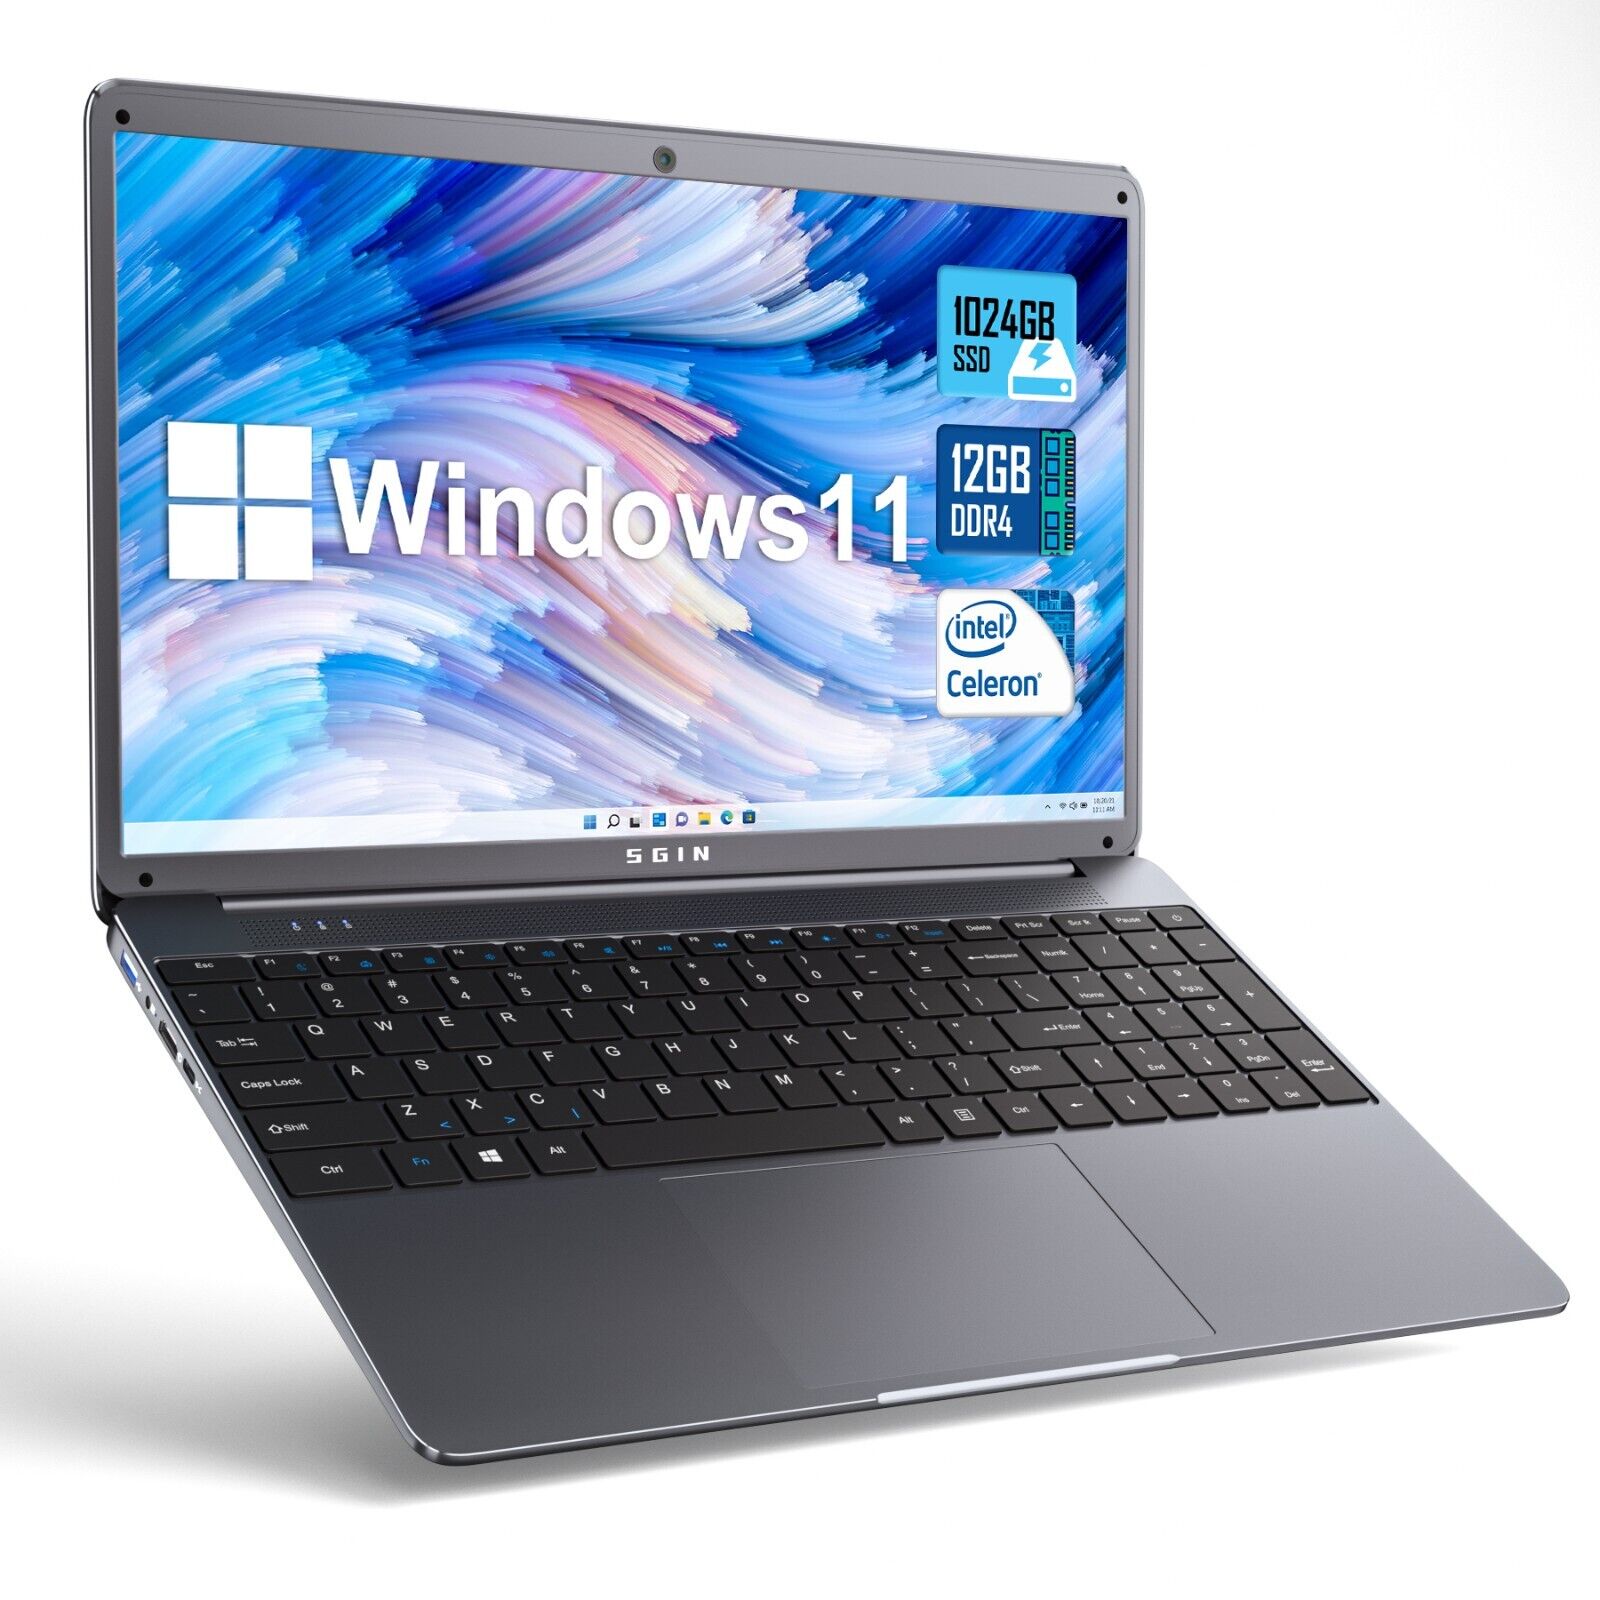 SGIN Notebook 15. 6Inch Intel Celeron 2.8GHz 12GB RAM 1024GB SSD  HDMI laptop